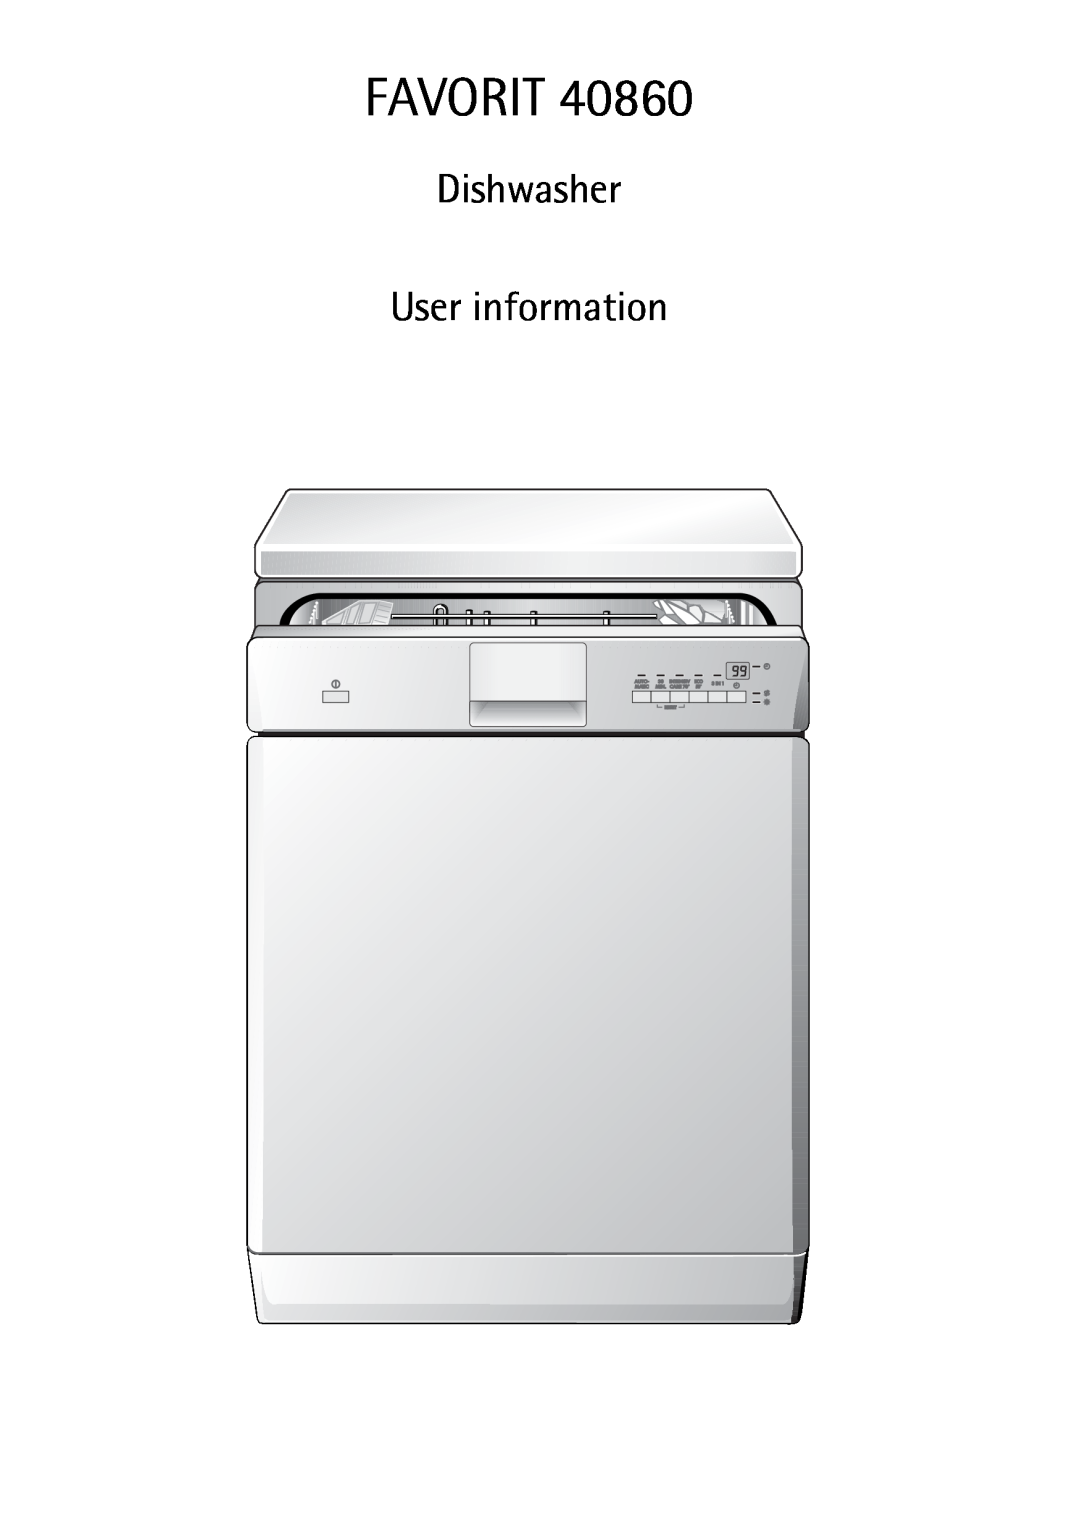 AEG 40860 manual Favorit, Dishwasher User information 